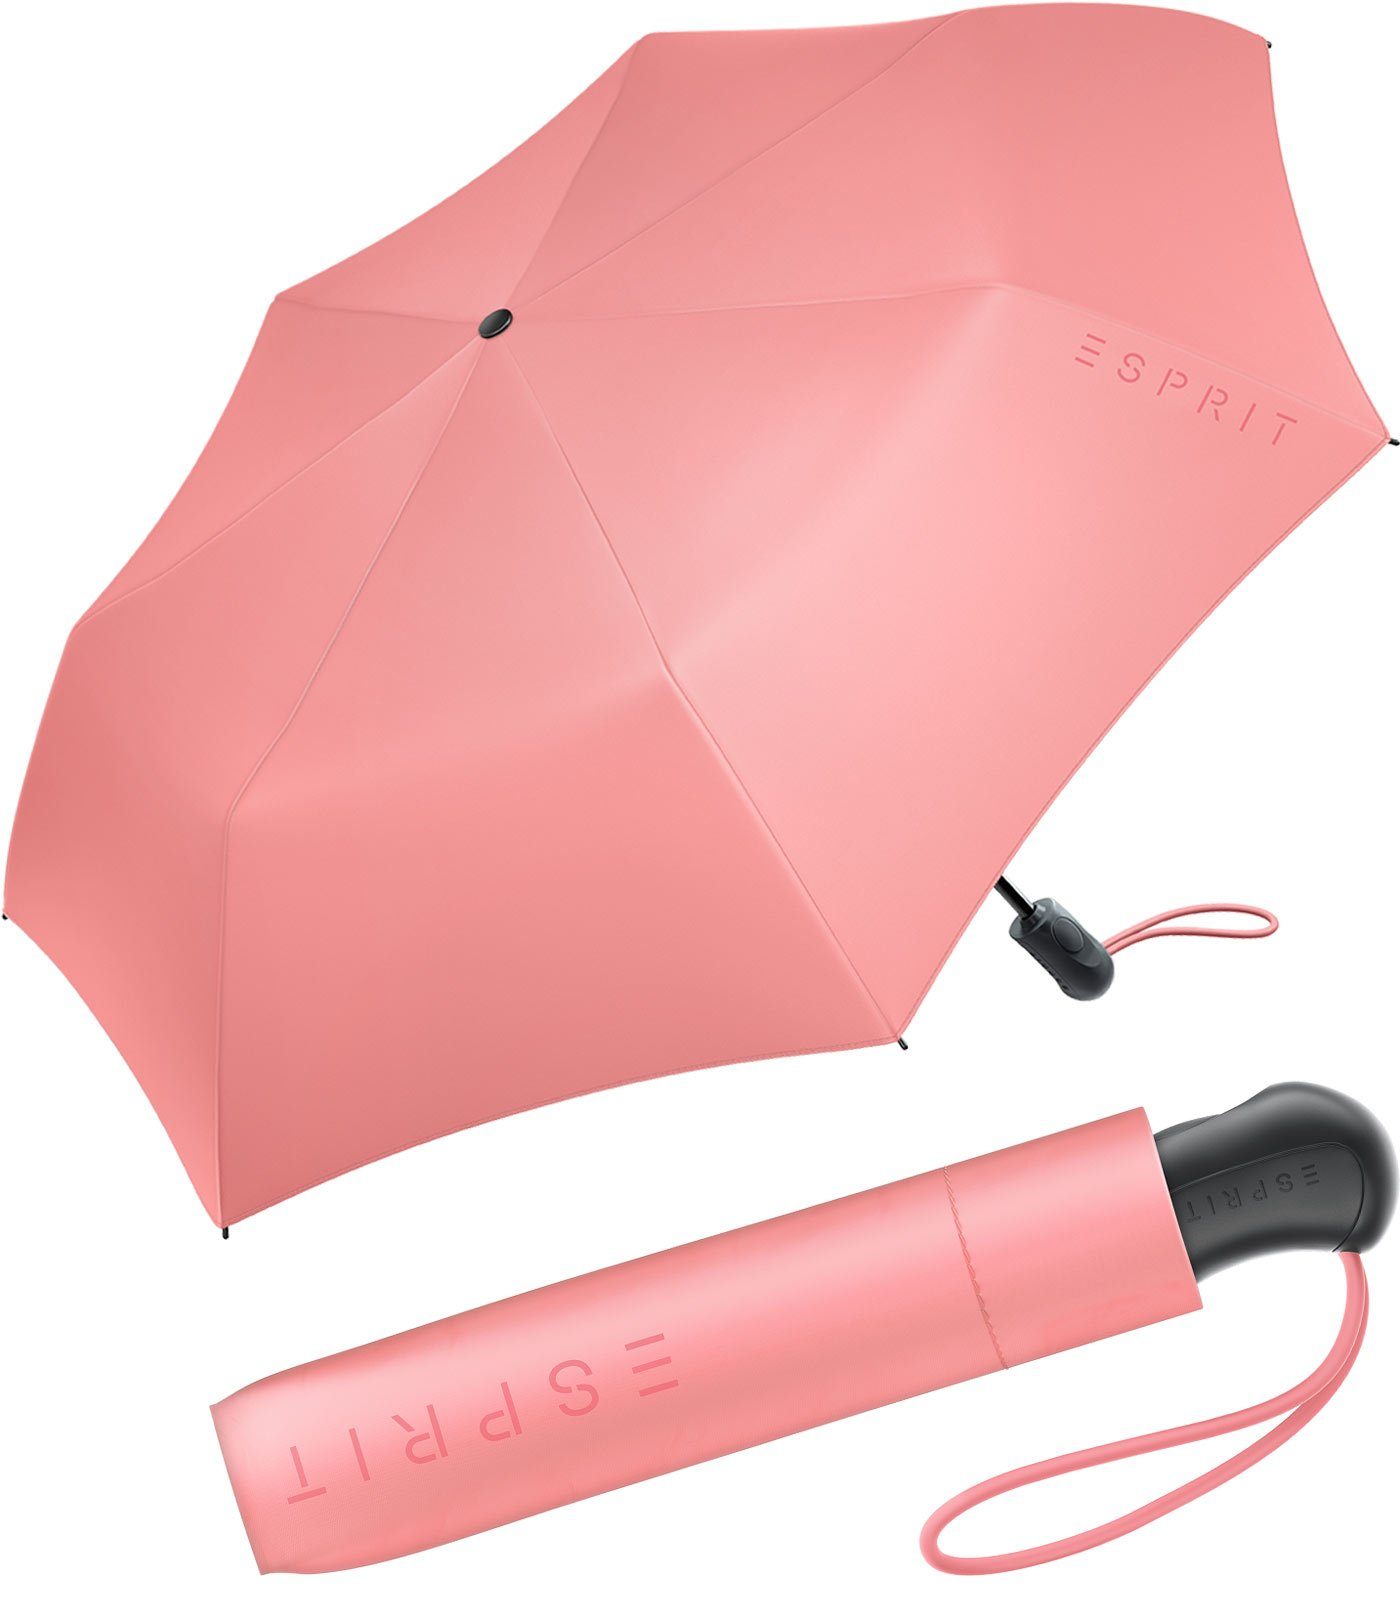 2022, Easymatic Auf-Zu Trendfarben koralle Light den stabil praktisch, in Automatik Esprit FJ Taschenregenschirm Damen neuen und